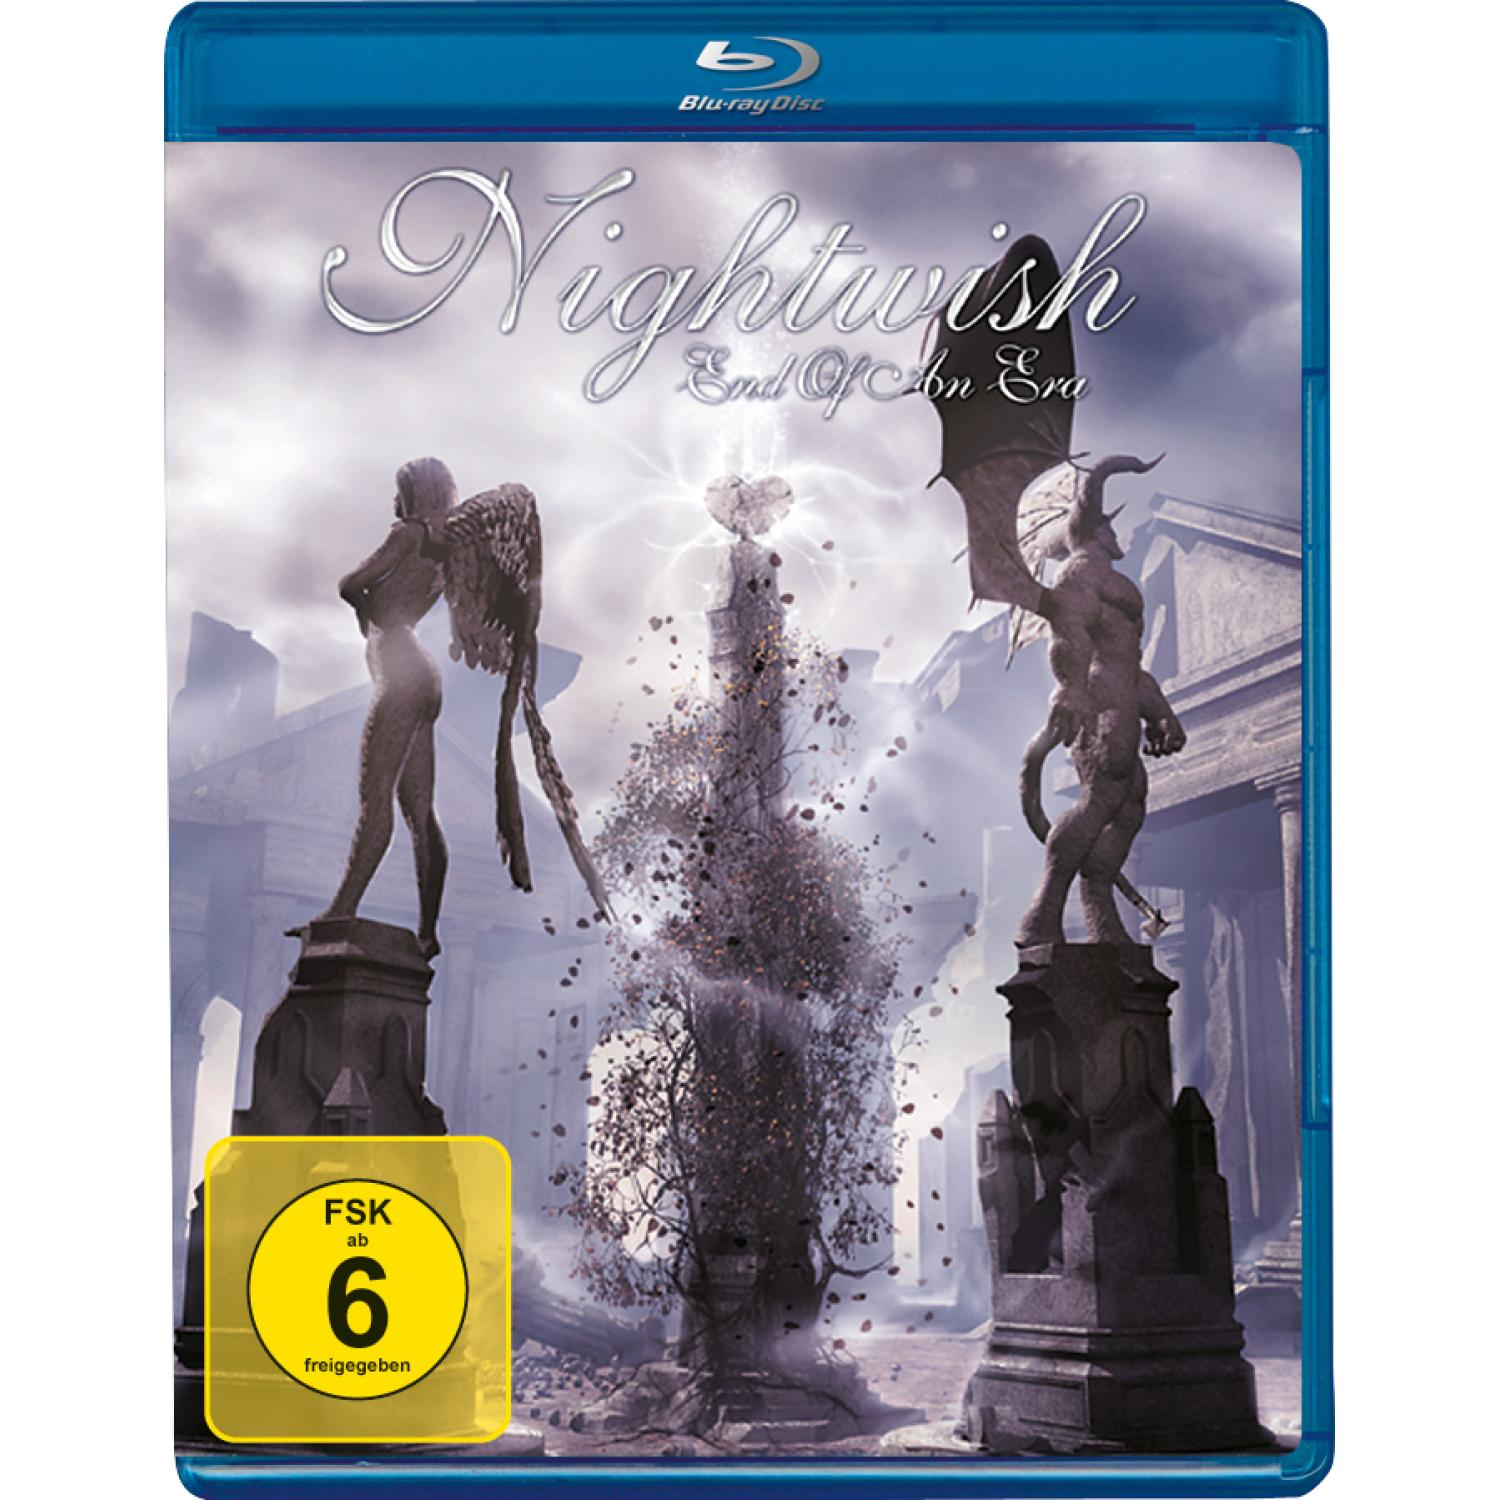 Nightwish - END OF AN - ERA (Blu-ray)